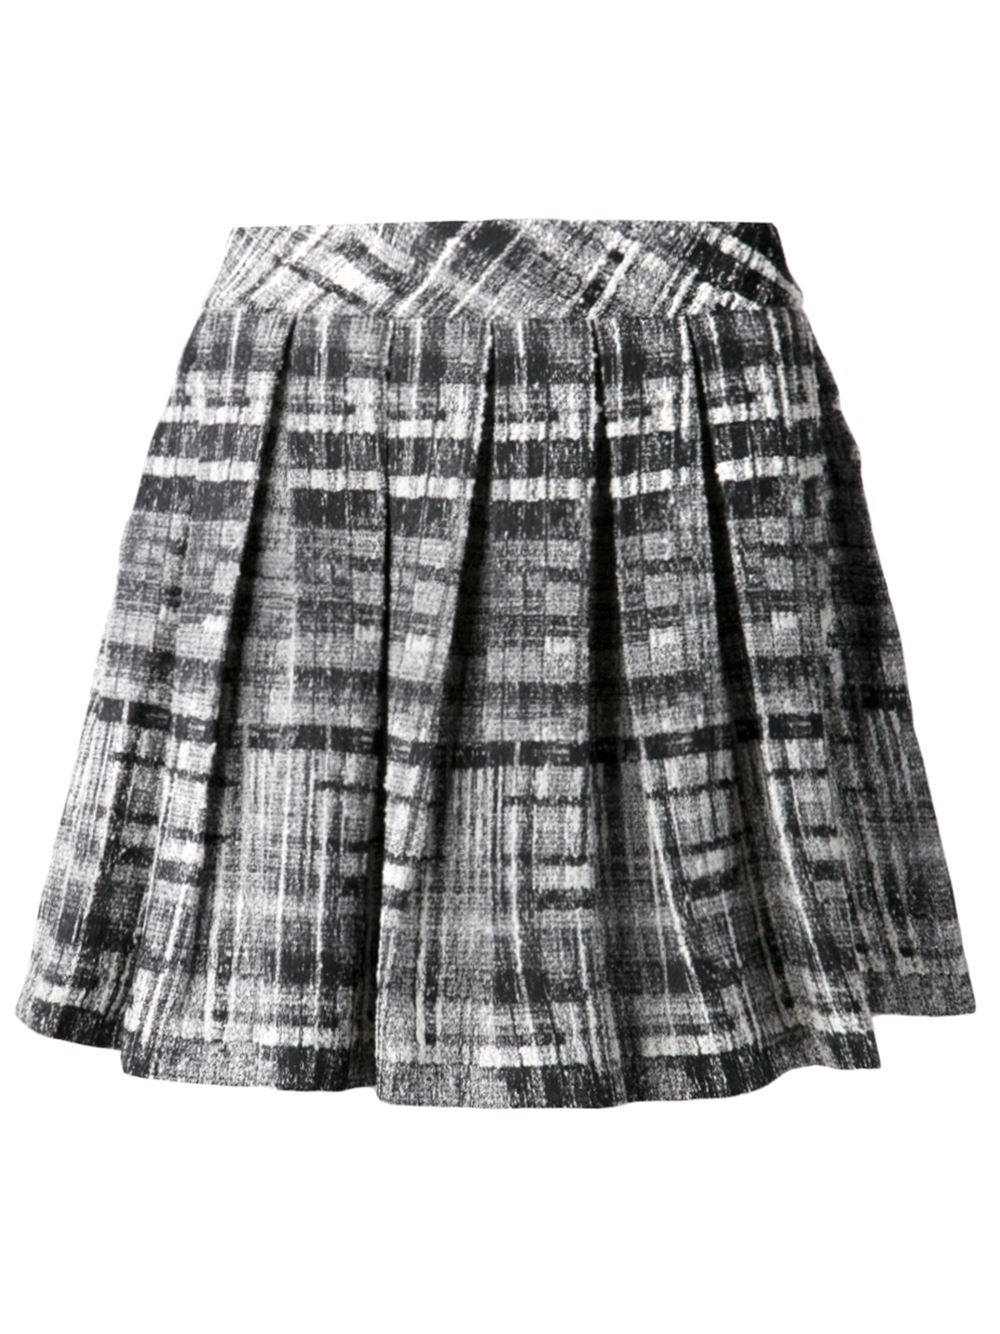 Alice + olivia Tweed Pleated Skirt in Black | Lyst